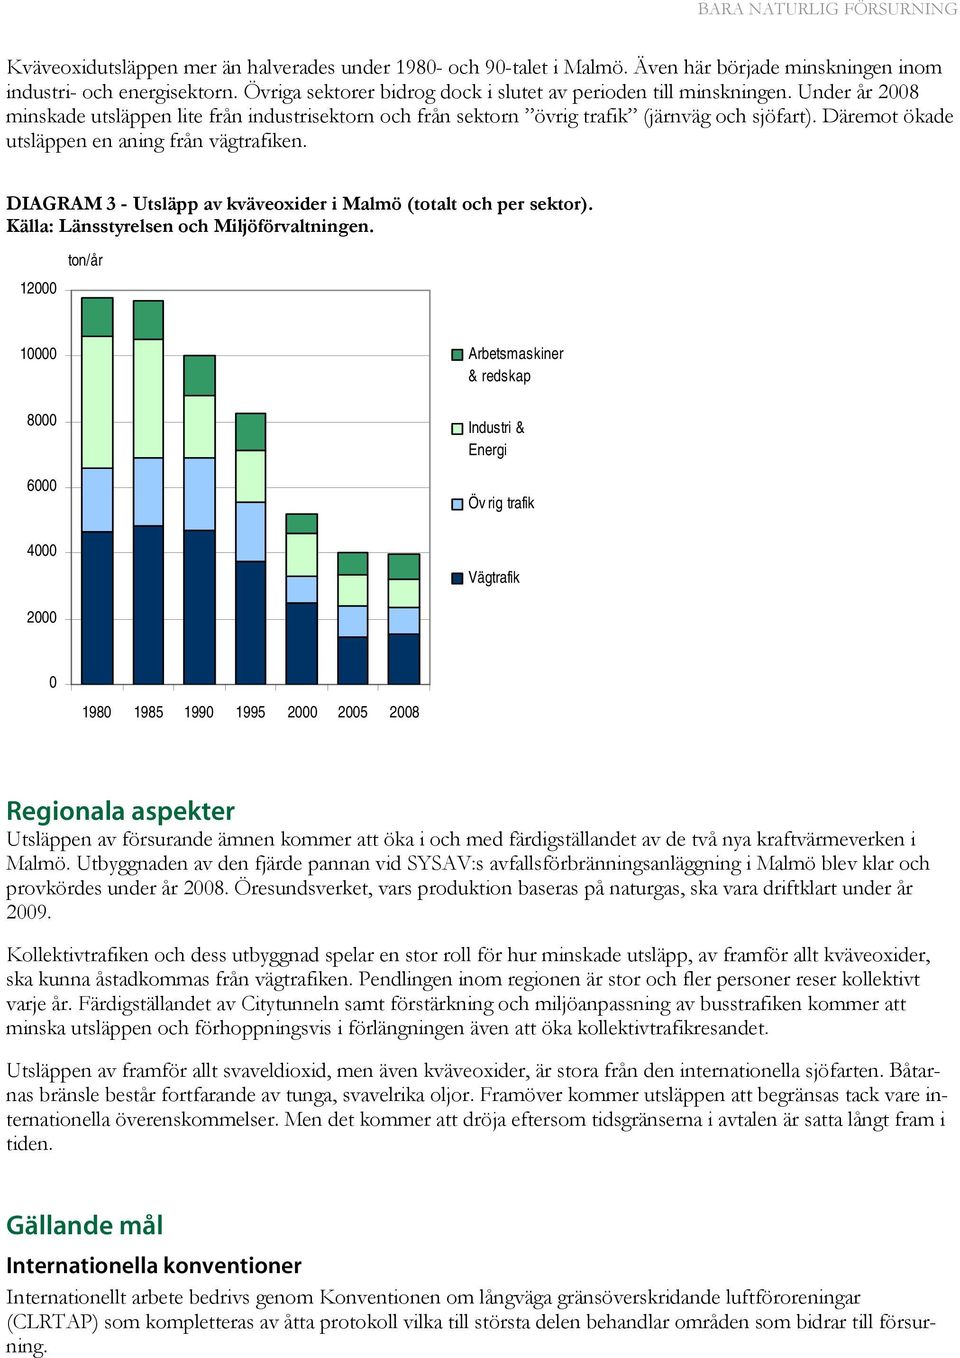 DIAGRAM 3 - Utsläpp av kväveoxider i Malmö (totalt och per sektor). Källa: Länsstyrelsen och Miljöförvaltningen.